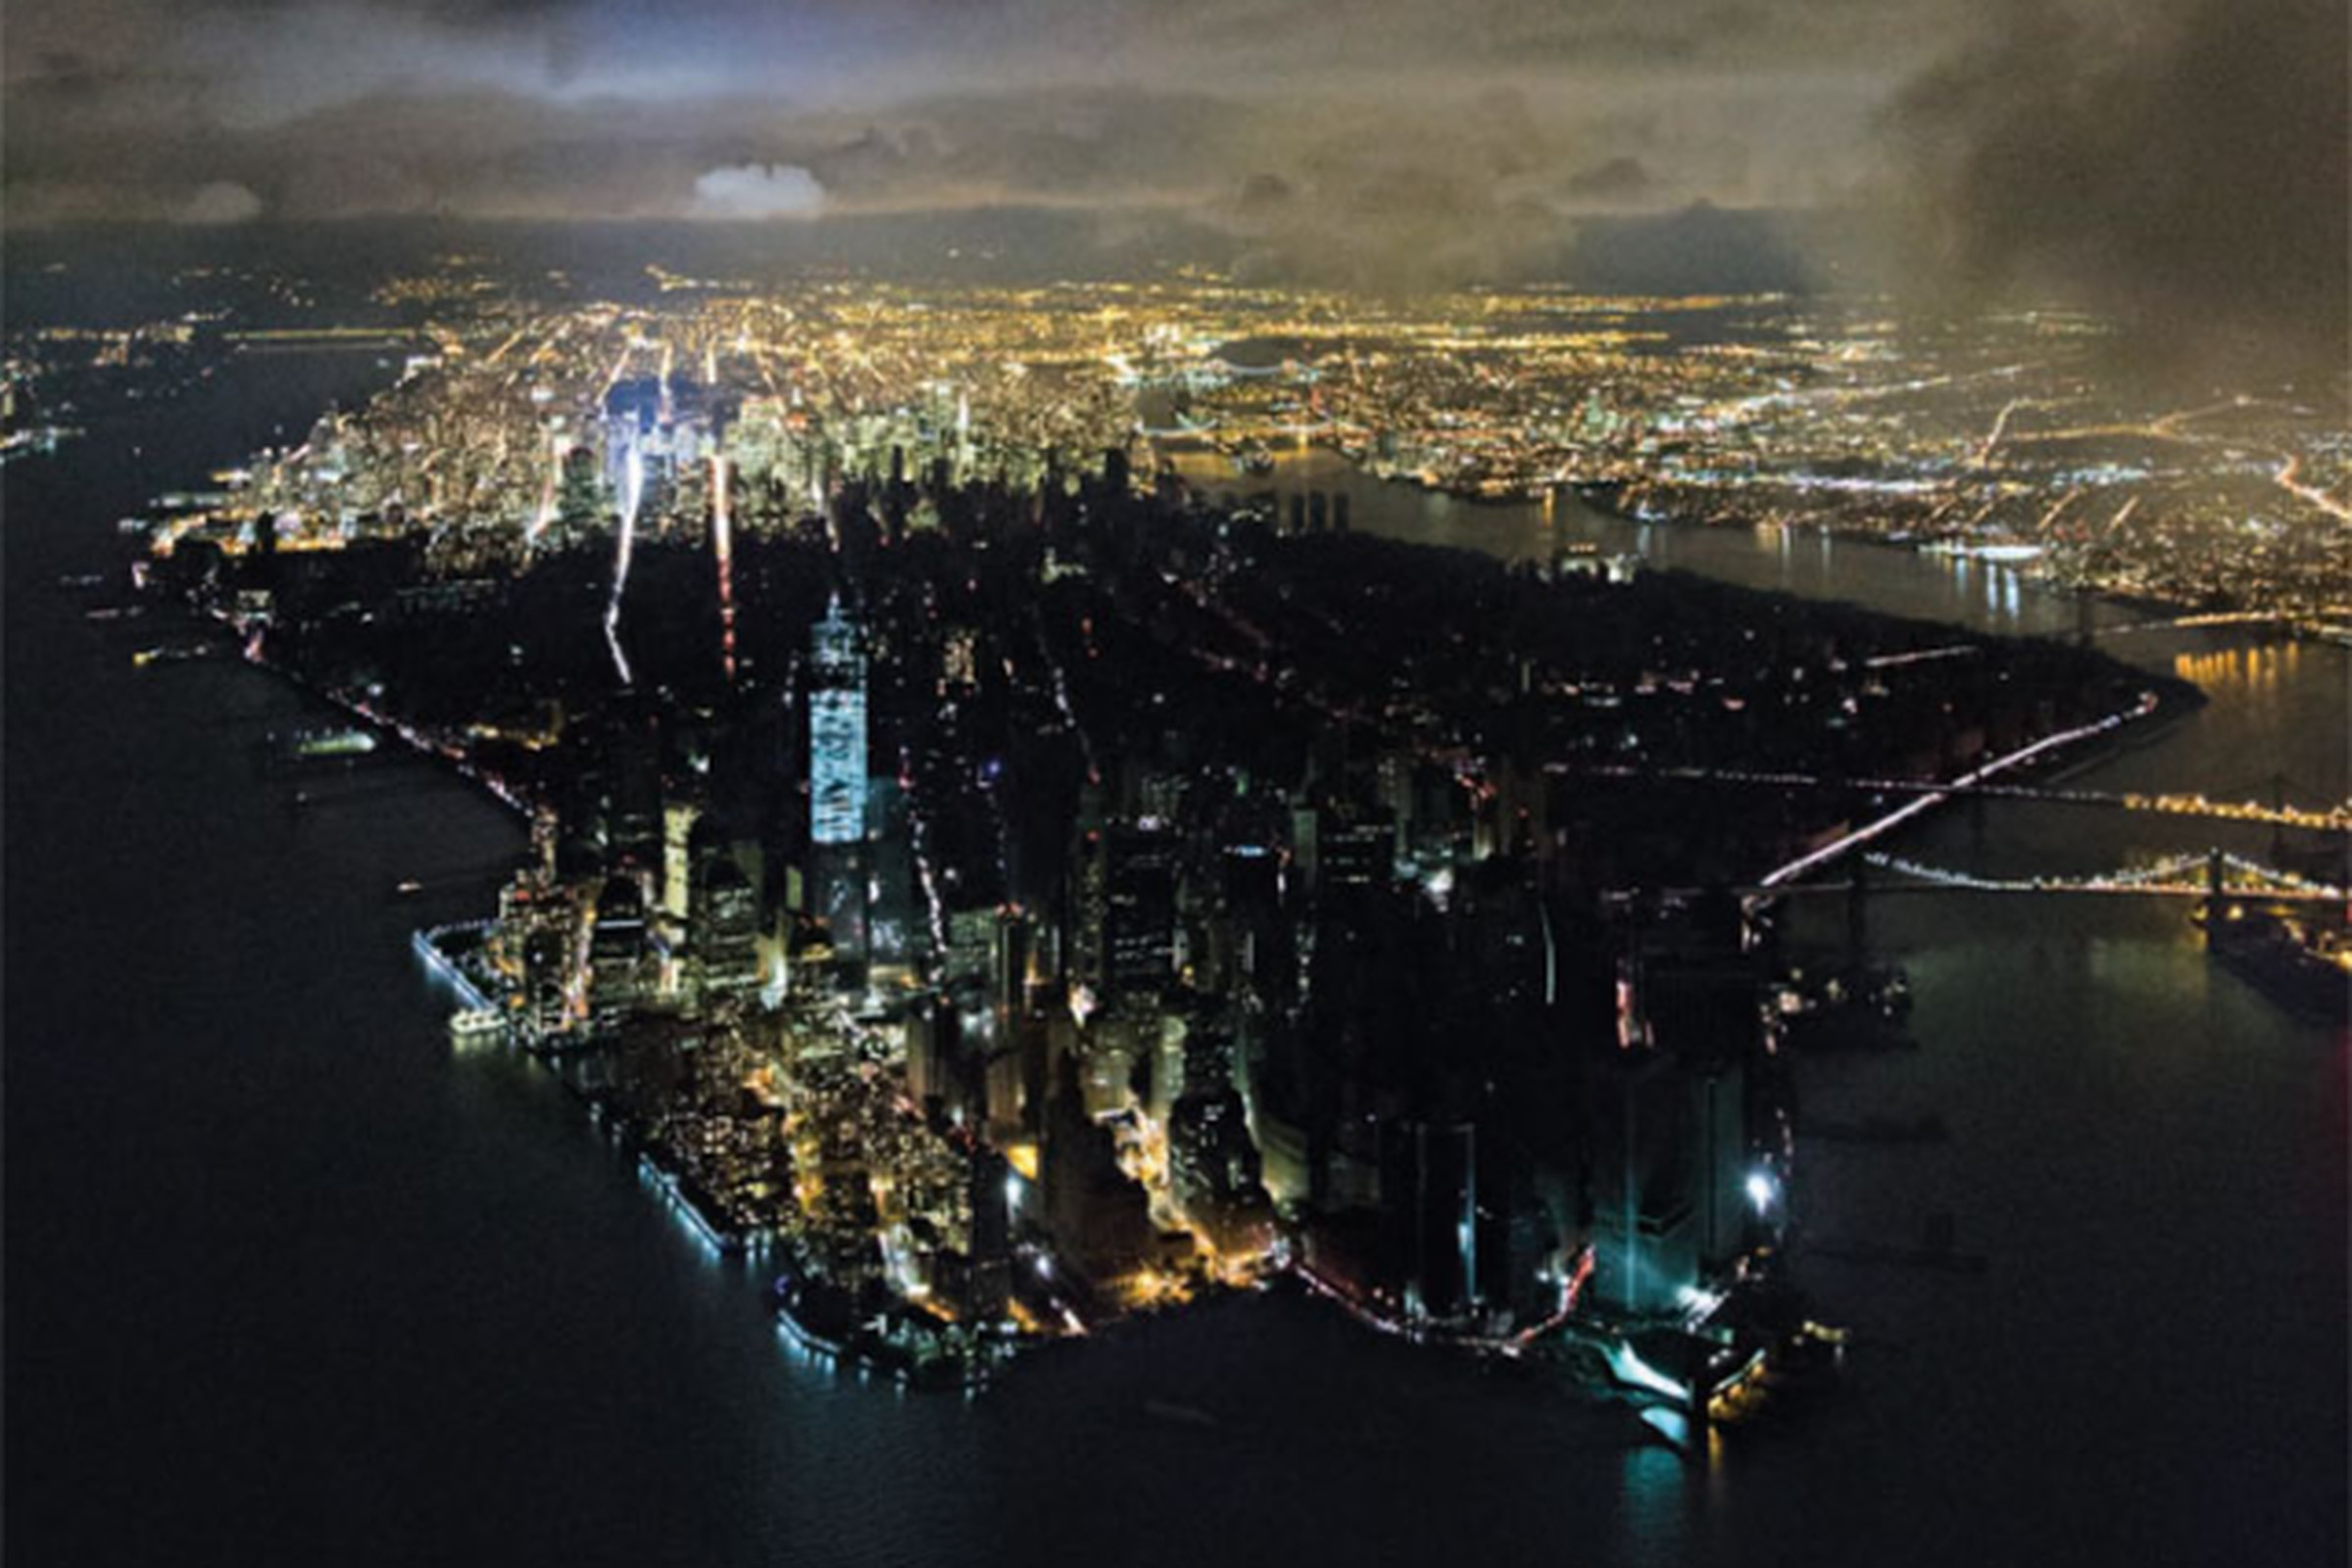 Iwan Baan aerial shot of NYC